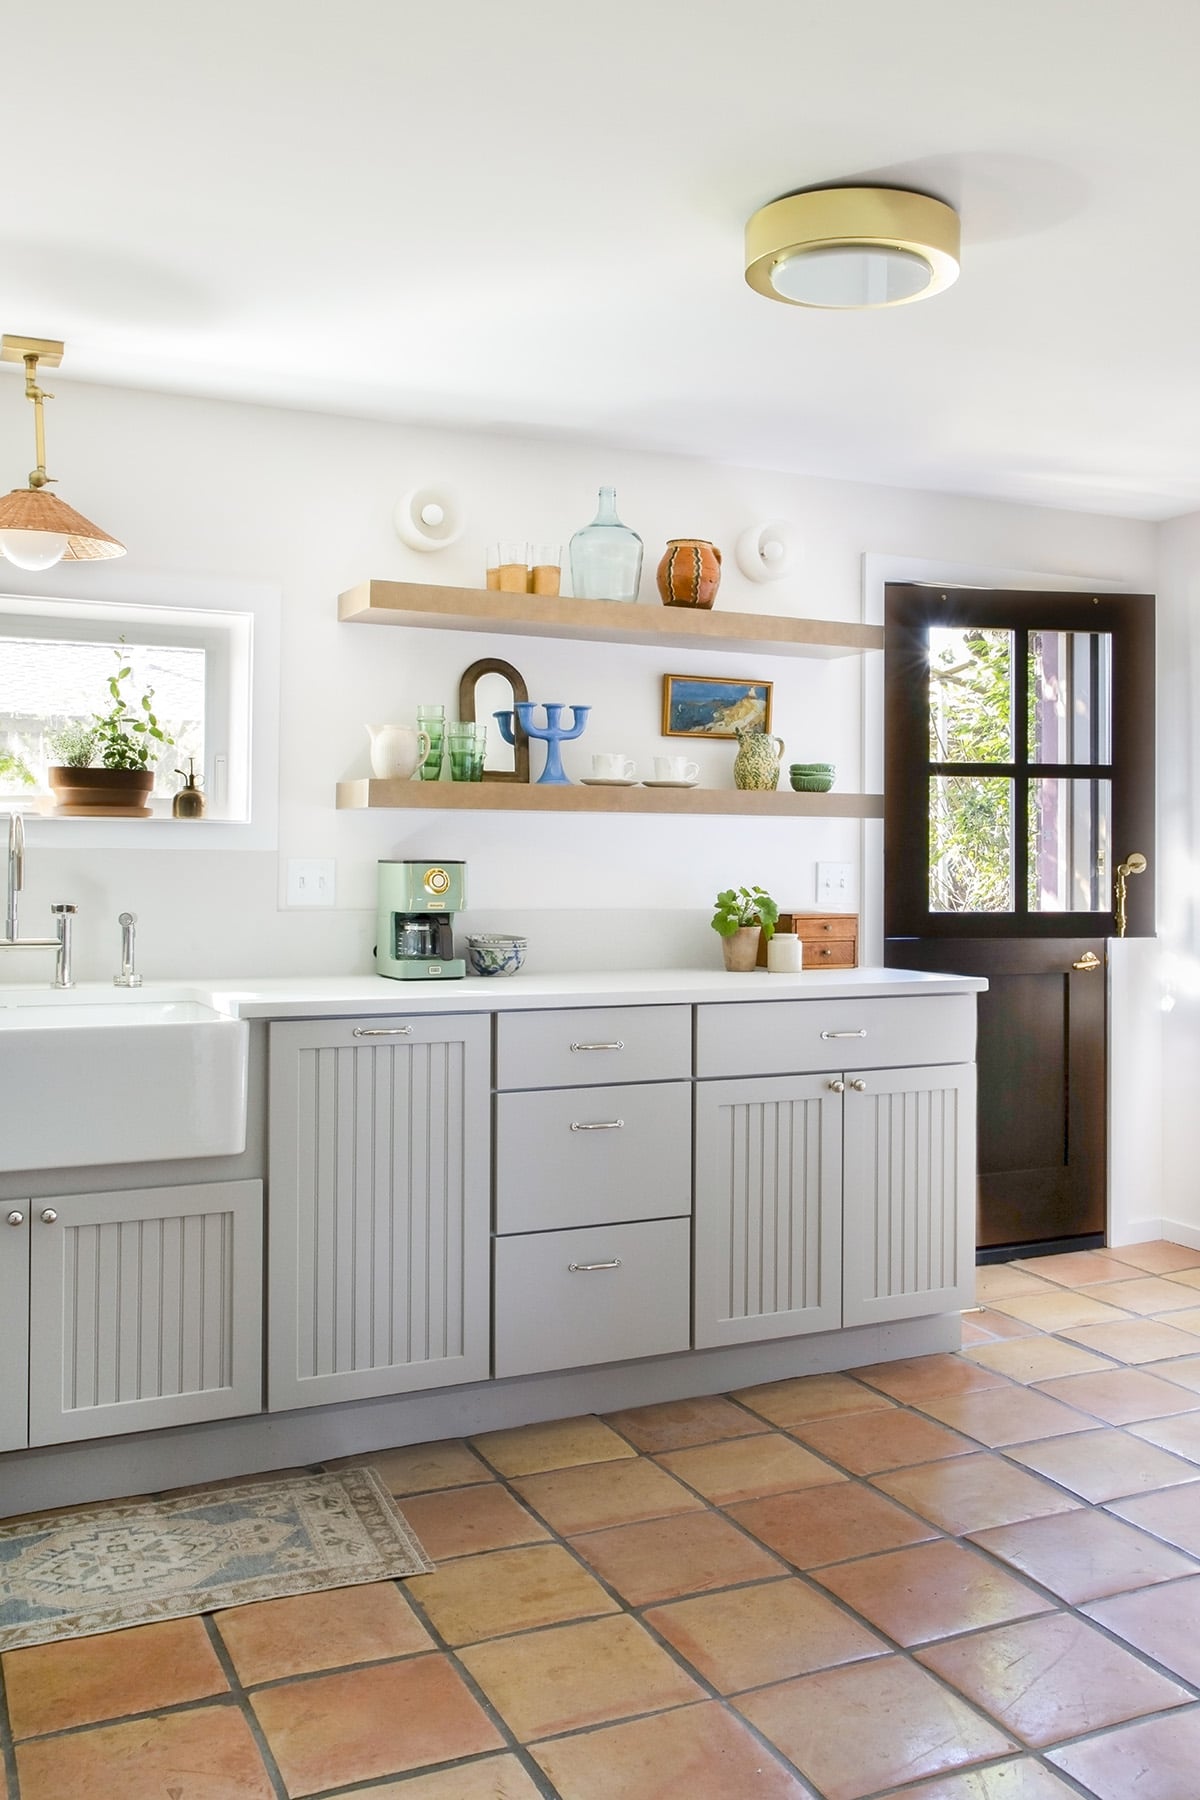 cassandra lavalle basement kitchen remodel cottage garden kitchen